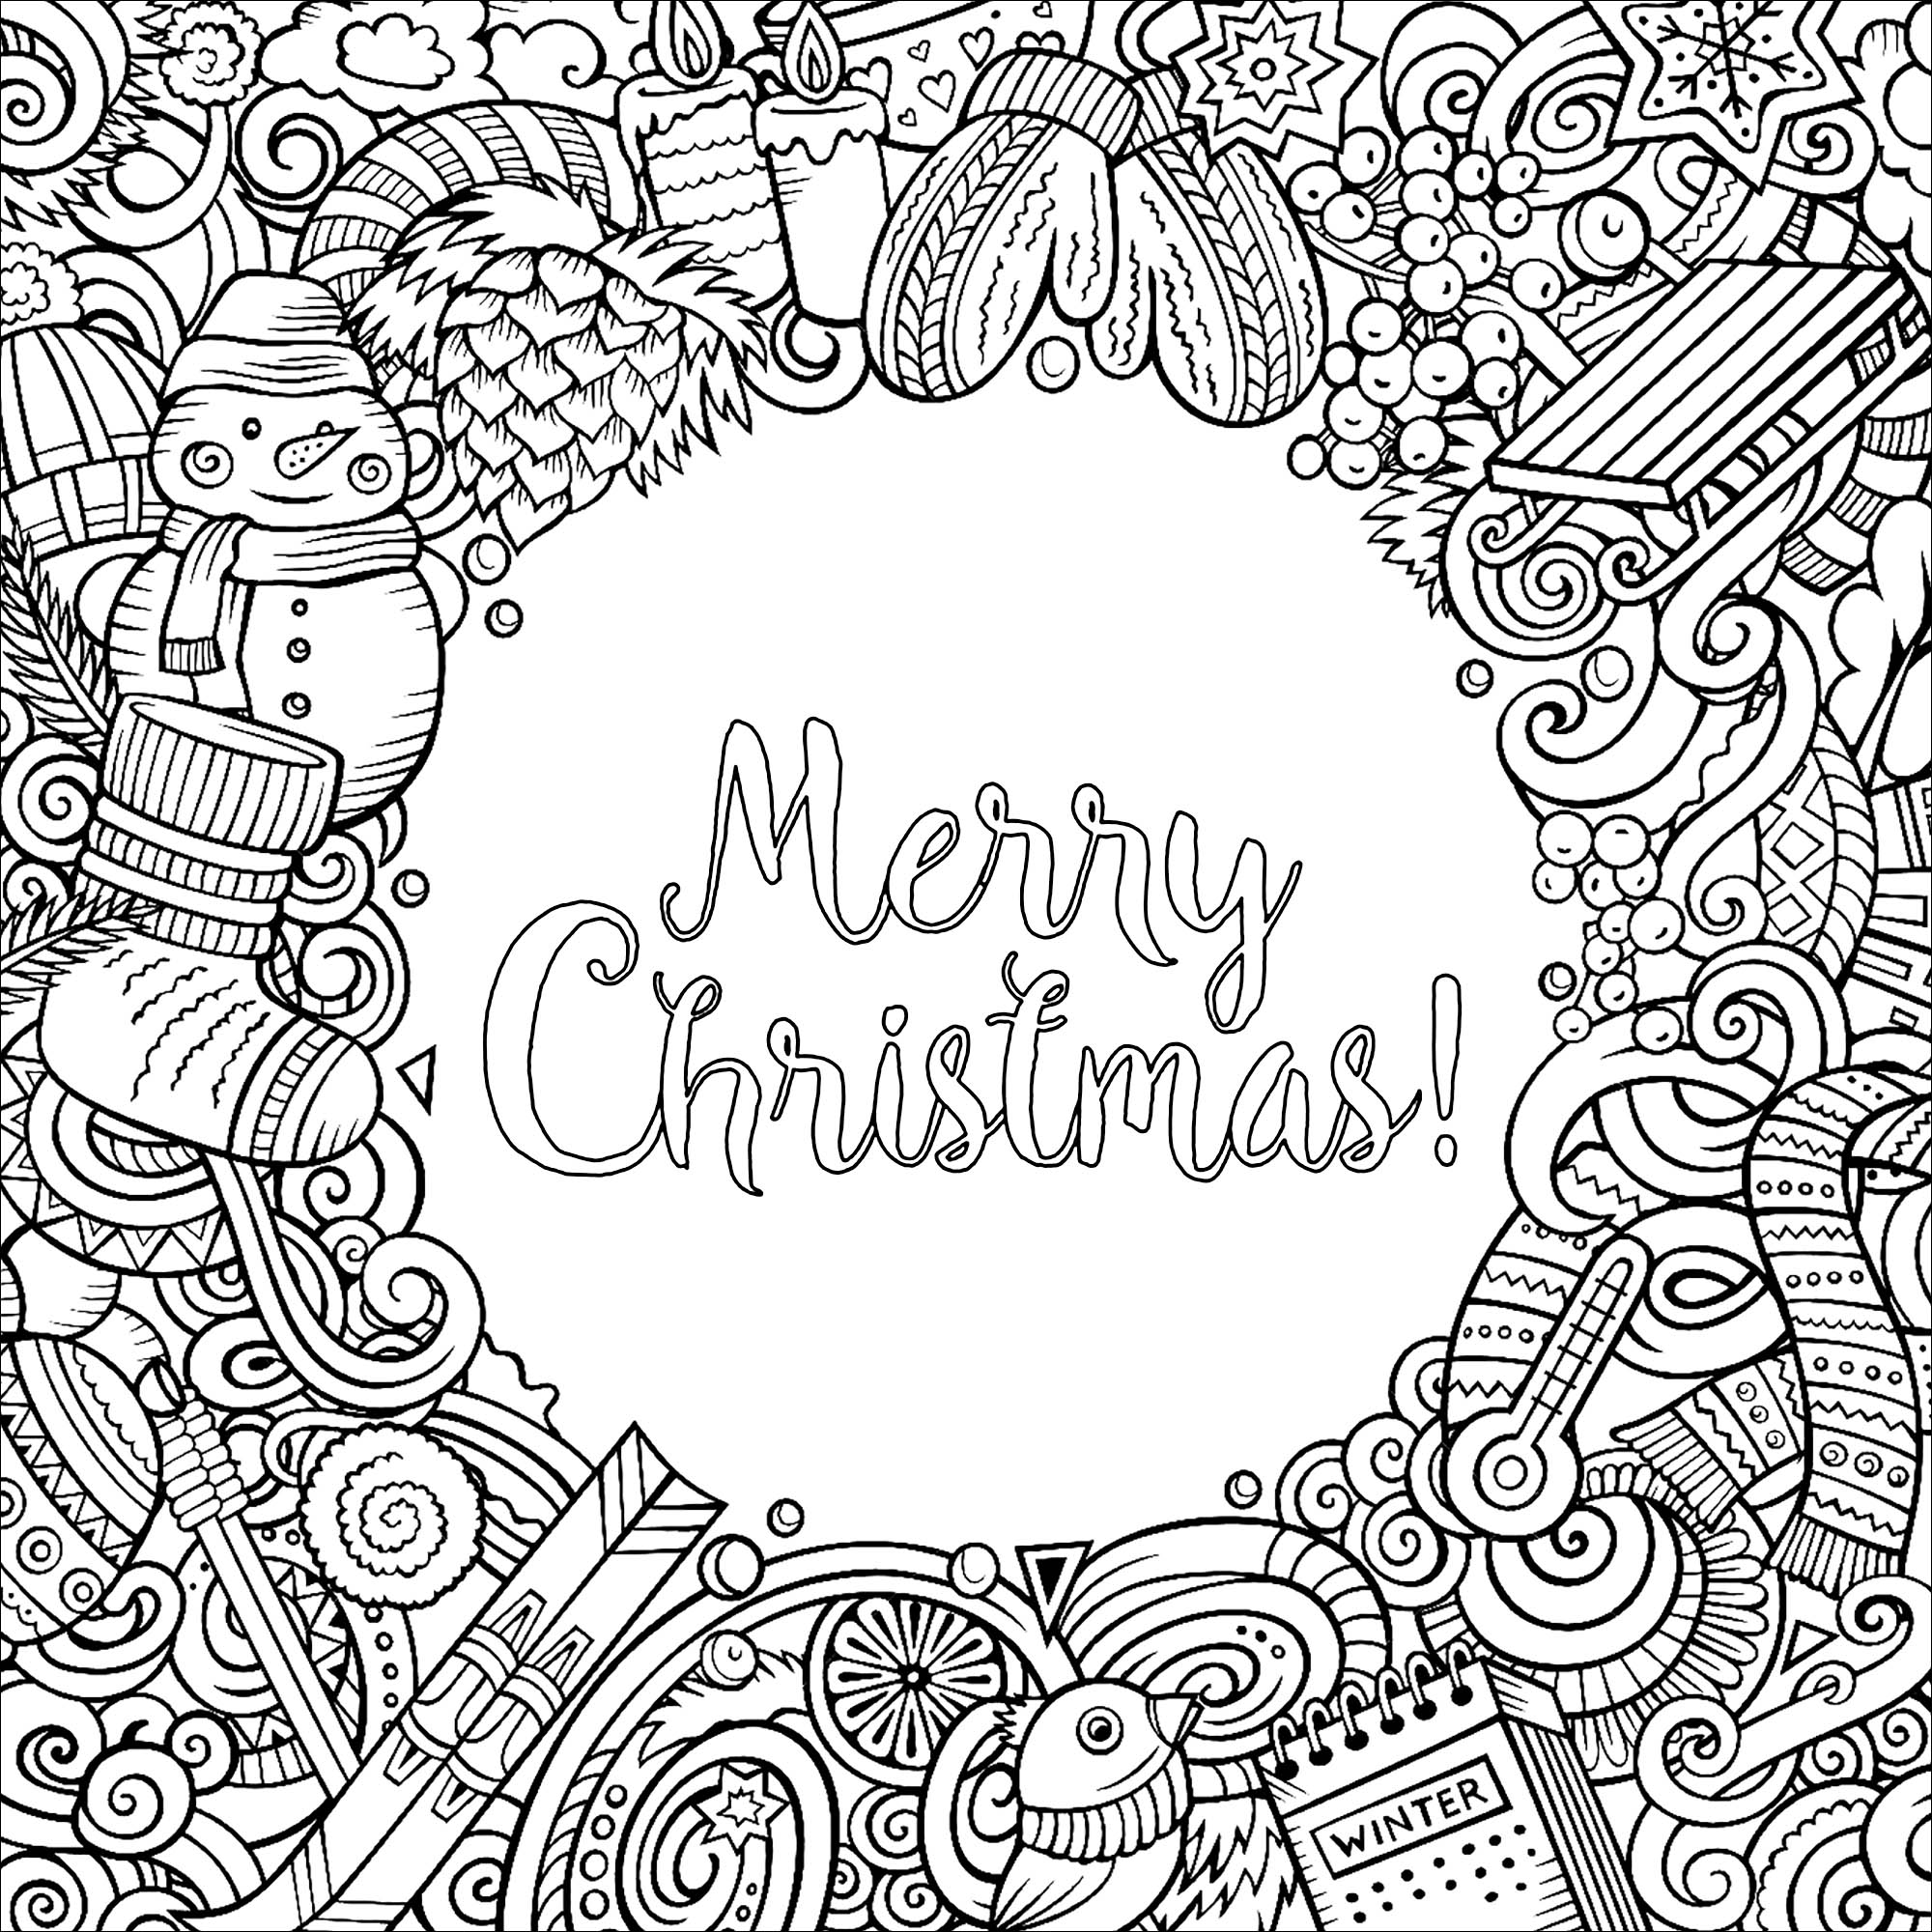 Desenhos vectoriais de desenhos animados de inverno - desenho de moldura quadrada, com o texto 'Feliz Natal!' no meio, Fonte : 123rf   Artista : Olga Kostenko